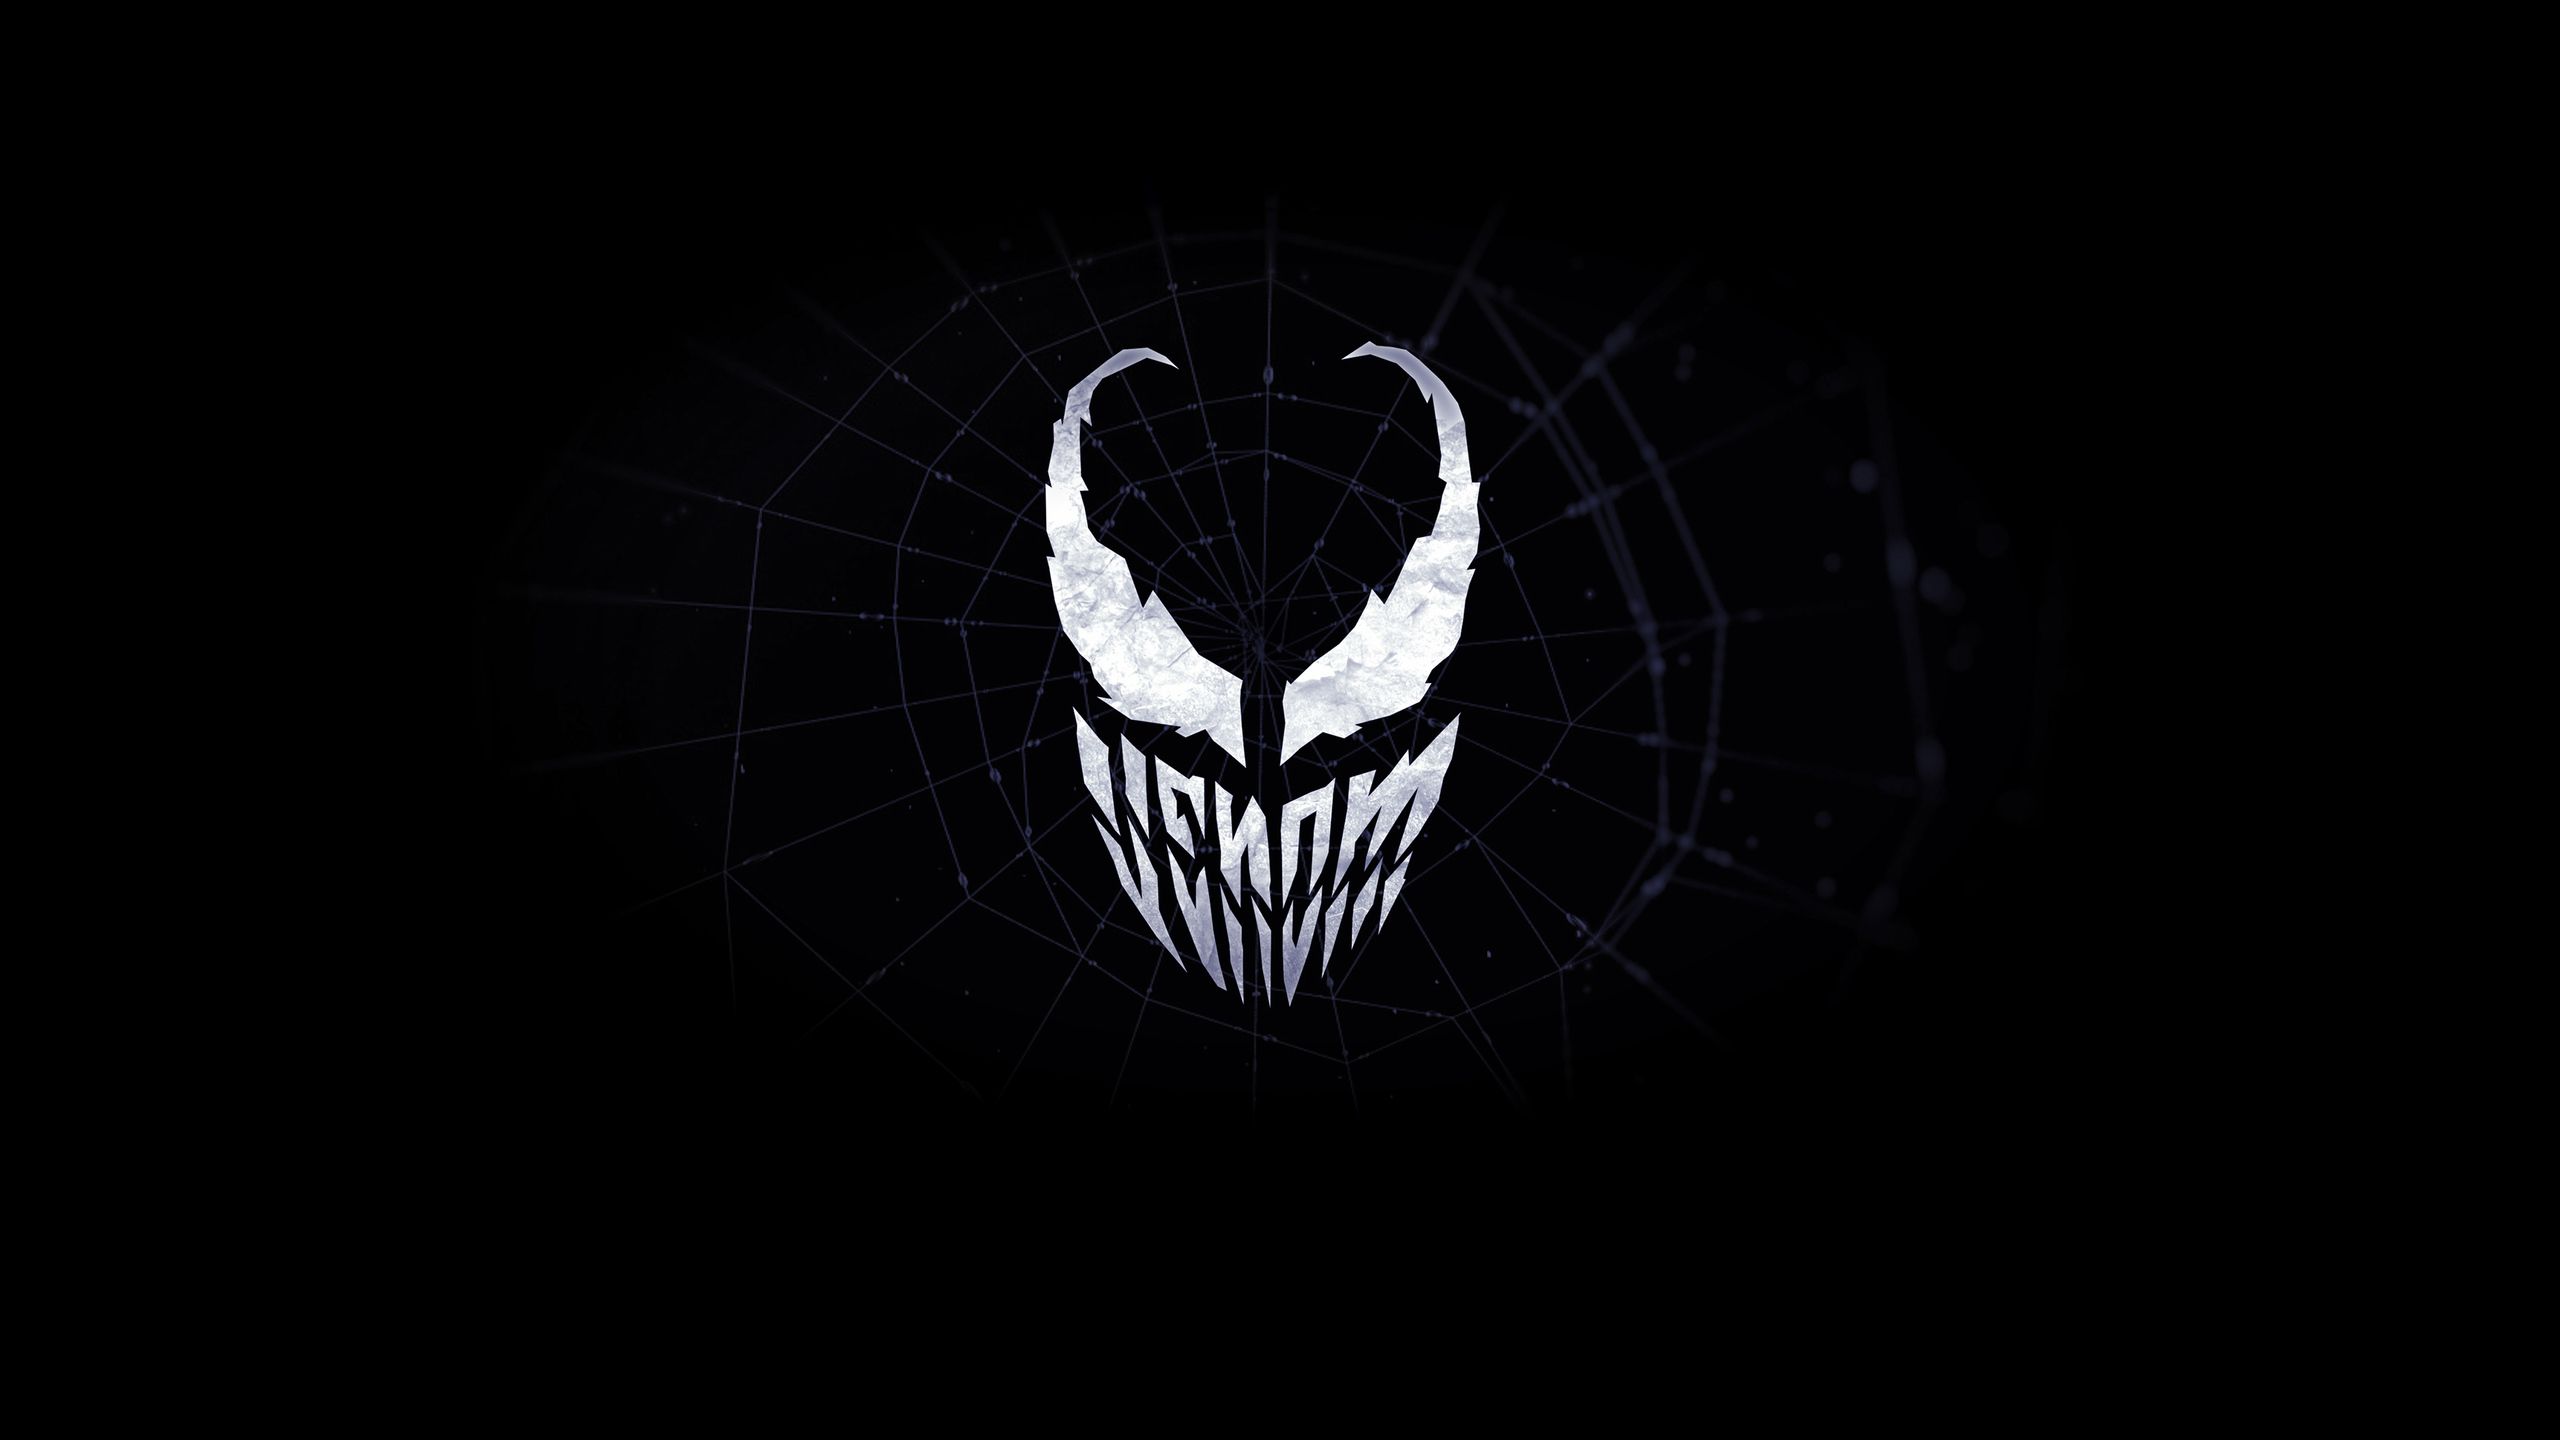 Venom Logo Wallpapers on WallpaperDog.